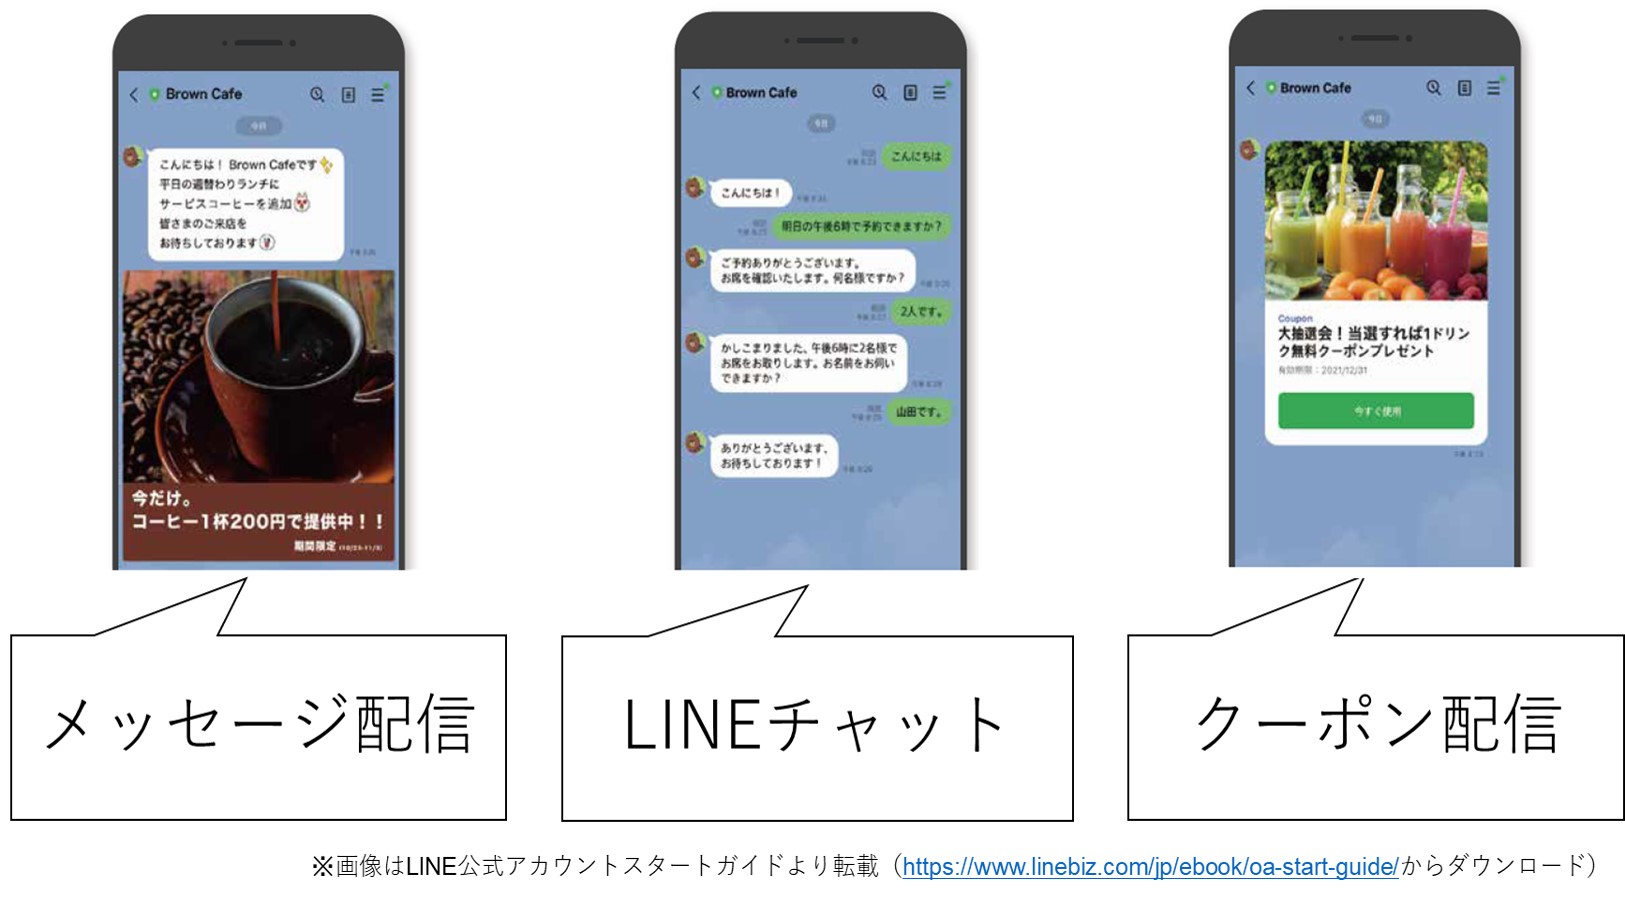 LINE公式アカウントの機能のイメージ画像